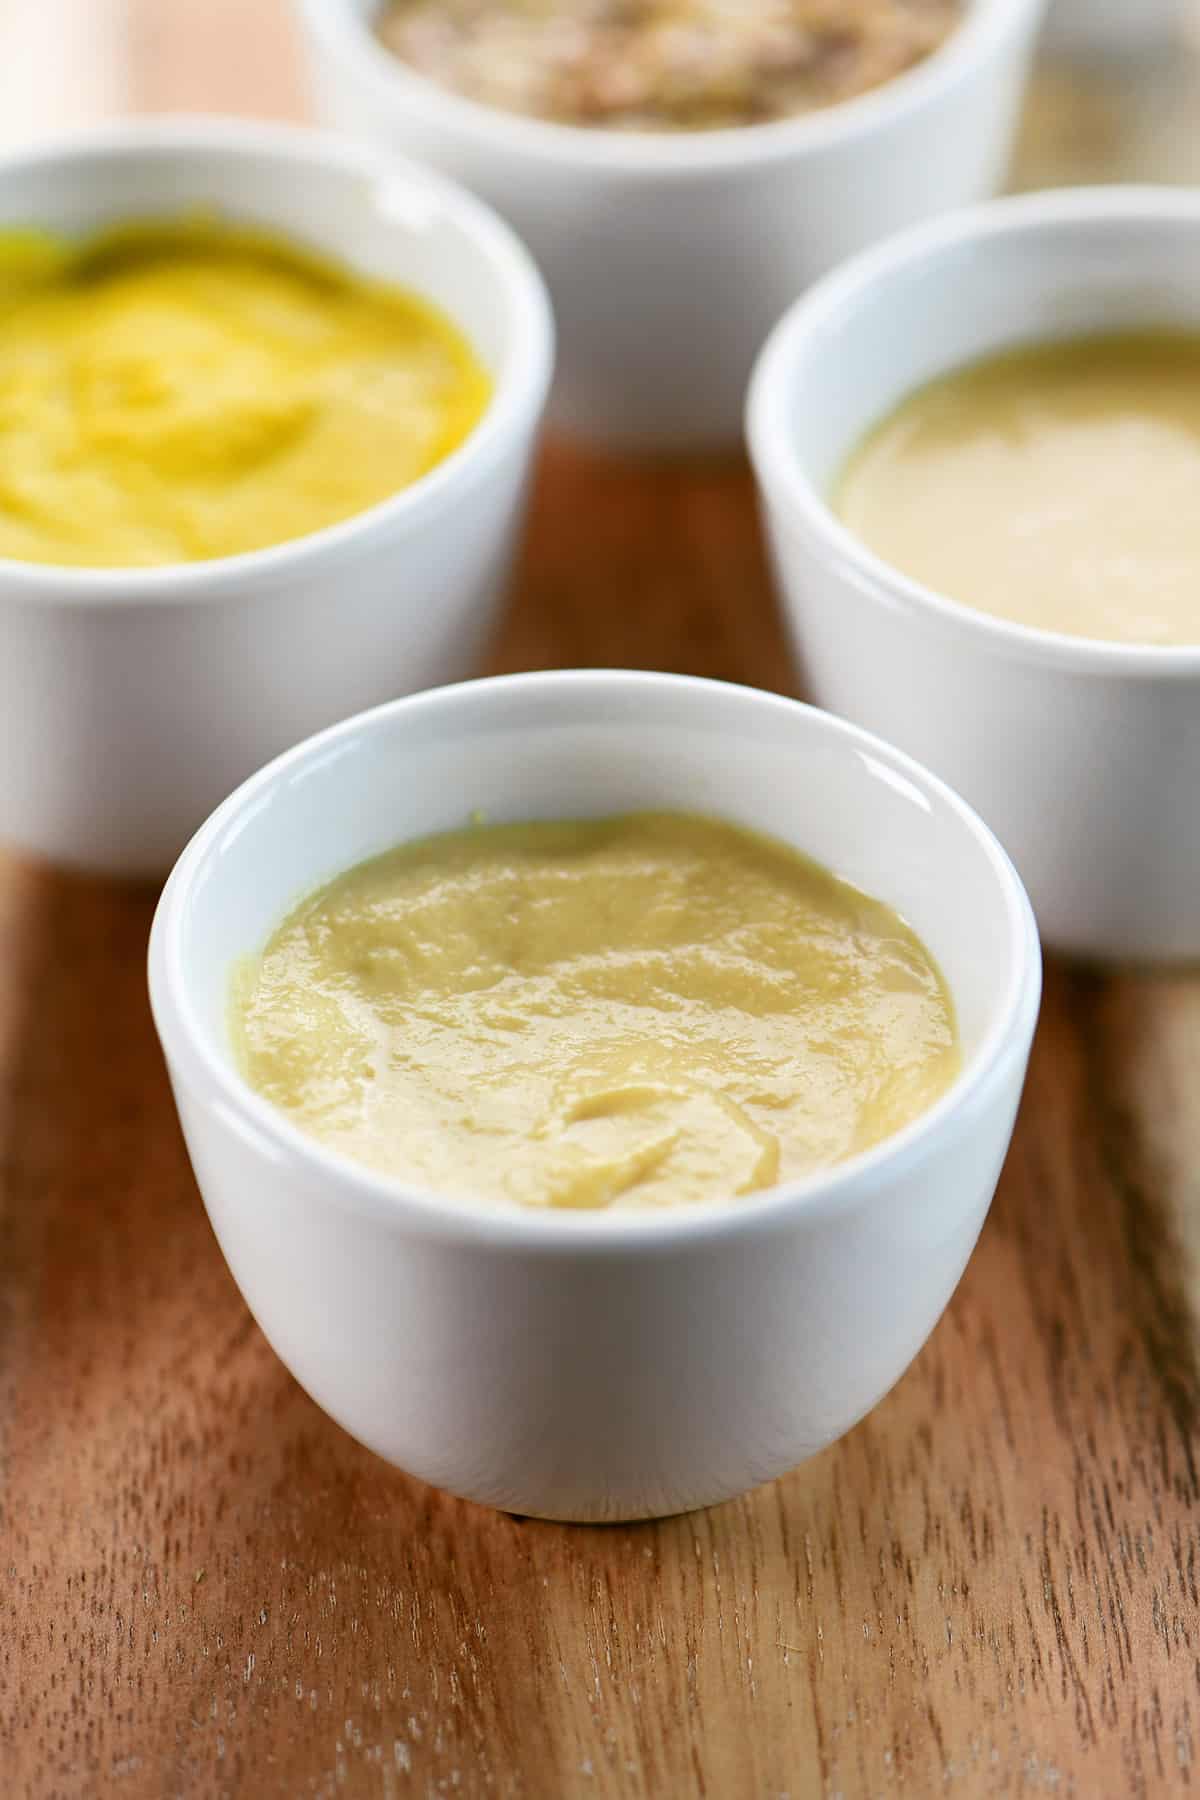 Dijon mustard in a small white condiment bowl.